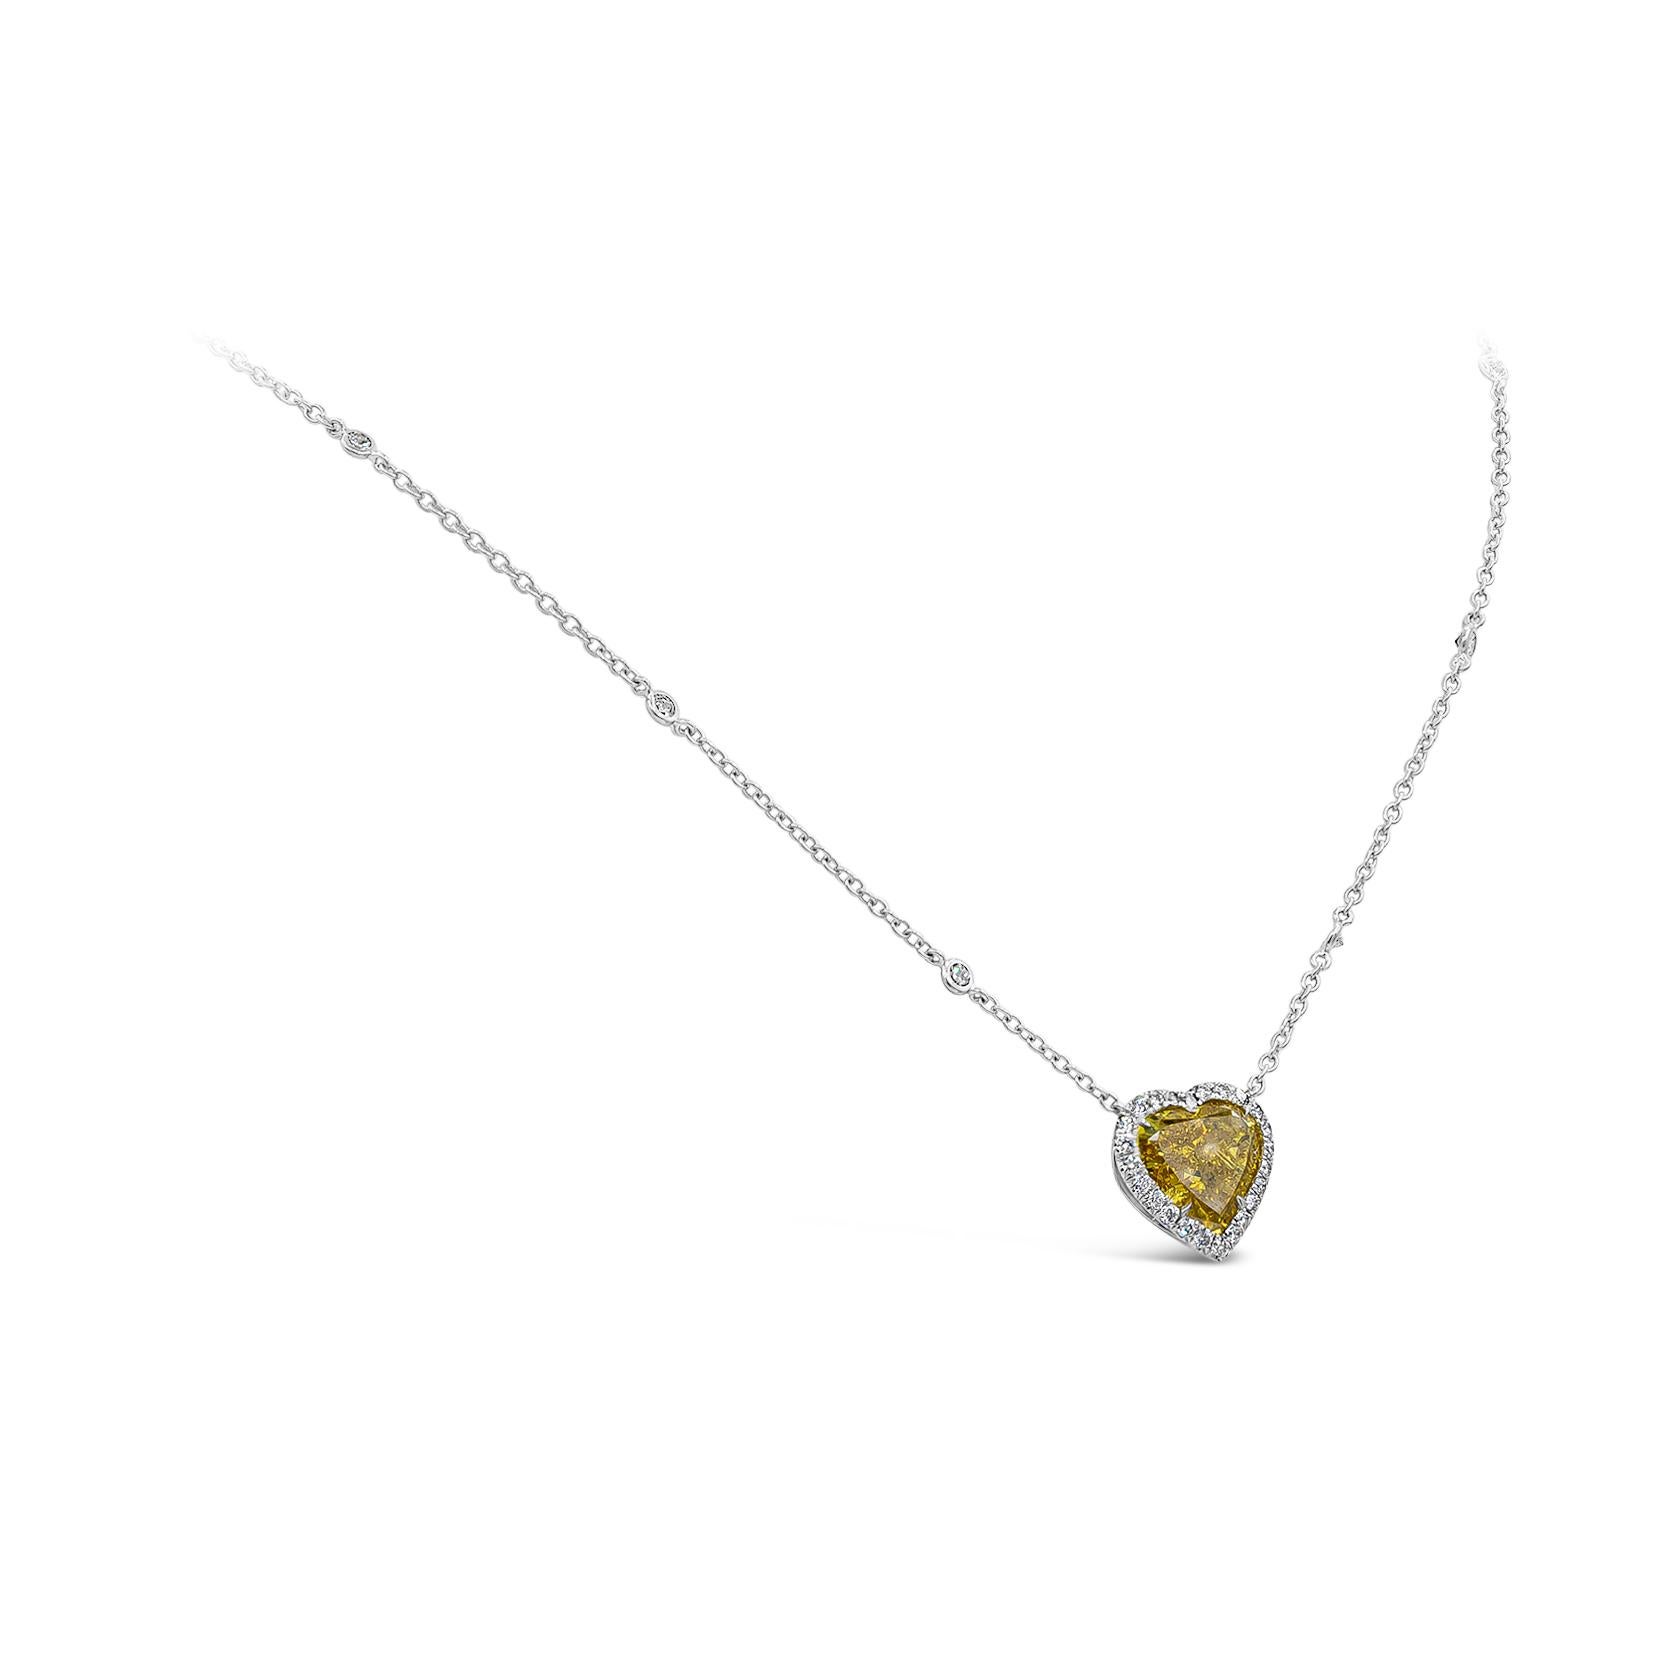 Ein farbenfrohes Schmuckstück der Spitzenklasse mit einem lebendigen, GIA-zertifizierten 4,02-Karat-Diamanten in Herzform, tief orange-gelb, mit einer Reinheit von I1, eingefasst in einer vierzackigen Fassung aus 18 Karat Weißgold. Umgeben von einer